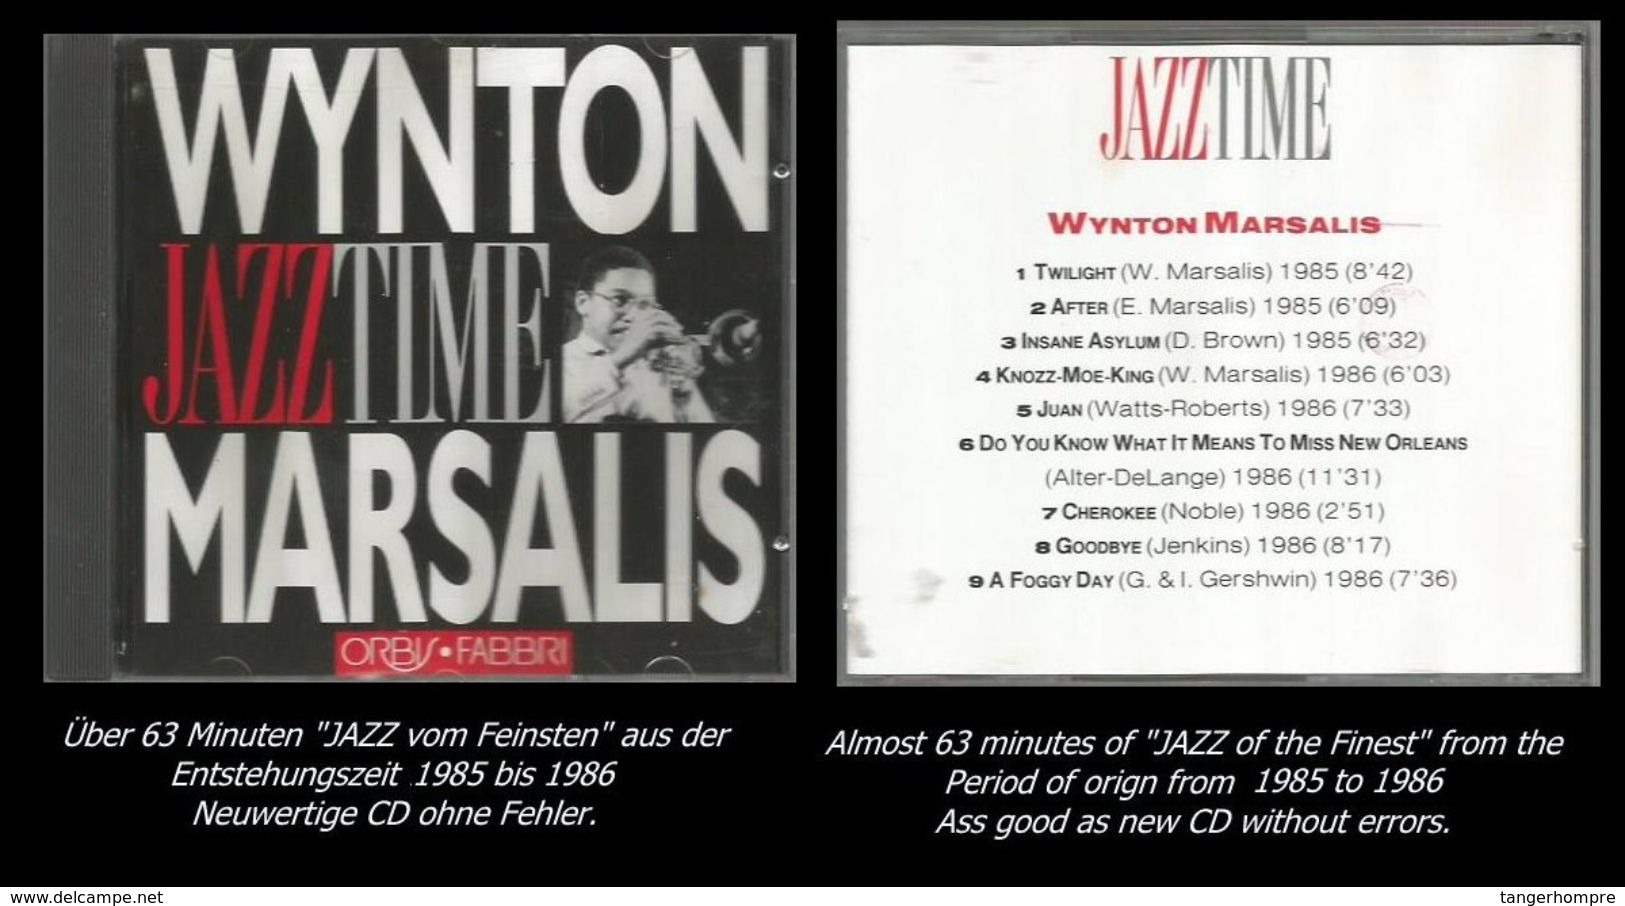 63 Minuten Jazz Von Wynton Marsalis - Jazz Of Finest - From 1985 To 1986 - Jazz